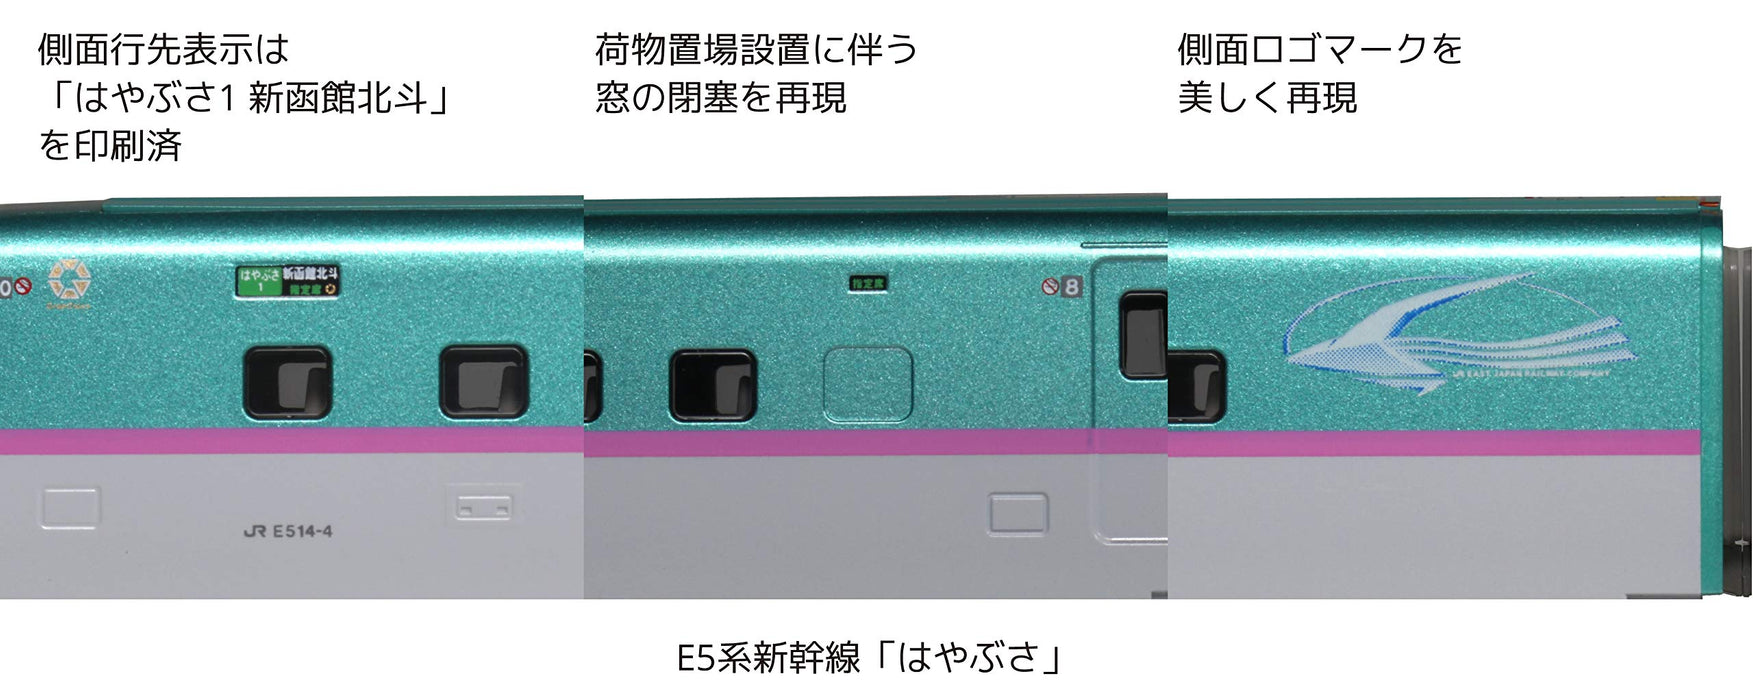 Kato N Gauge E5 Shinkansen Hayabusa 10-1663 3 Cars Set